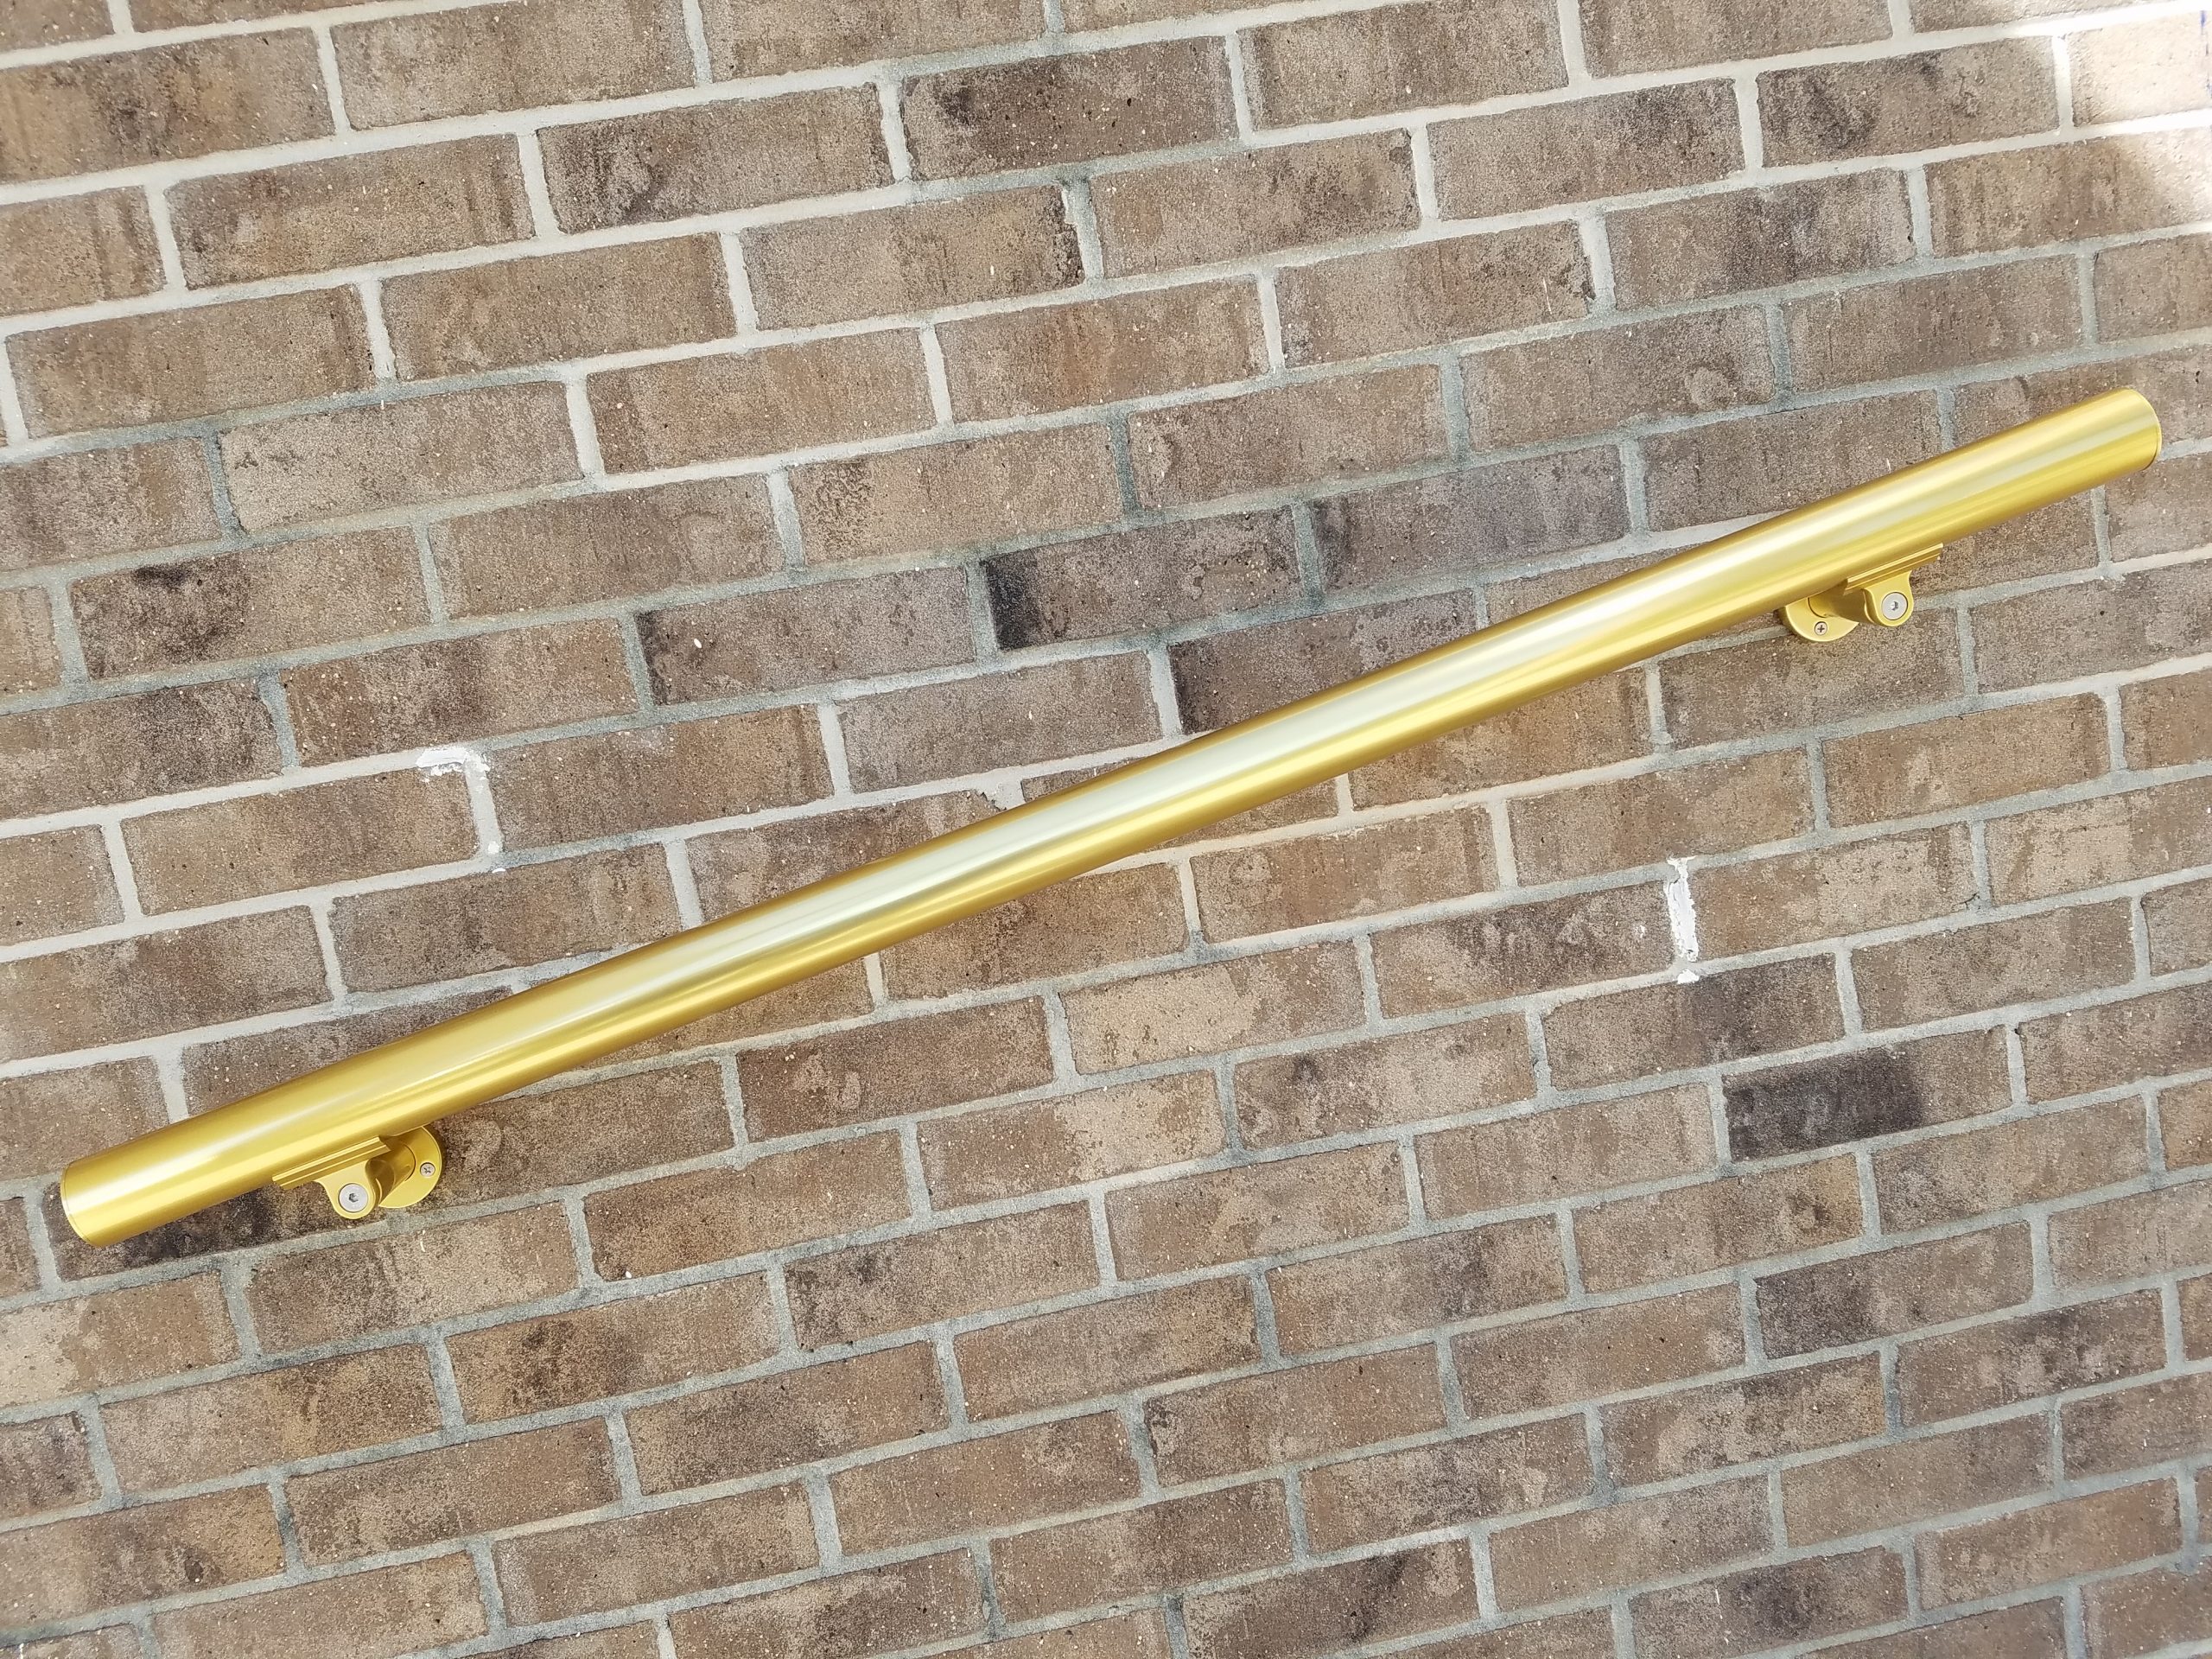 B52-Gold-1.97-diameter-handrail-aresscorp-